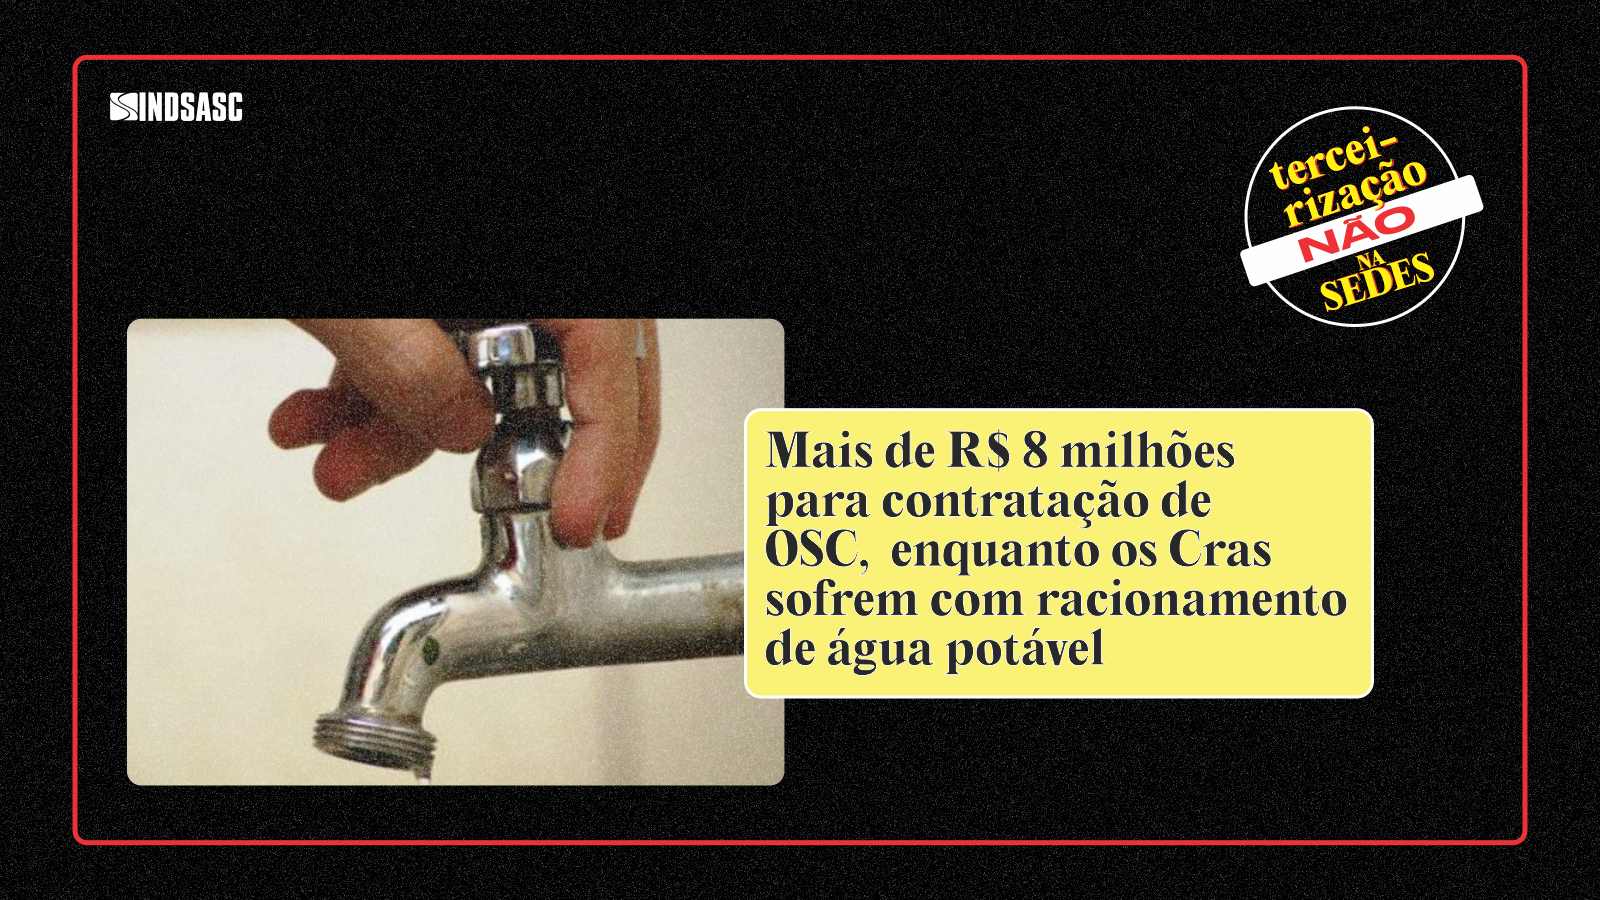 Mais de R$ 8 milhões para contratação de OSC, enquanto os Cras sofrem com racionamento de água potável